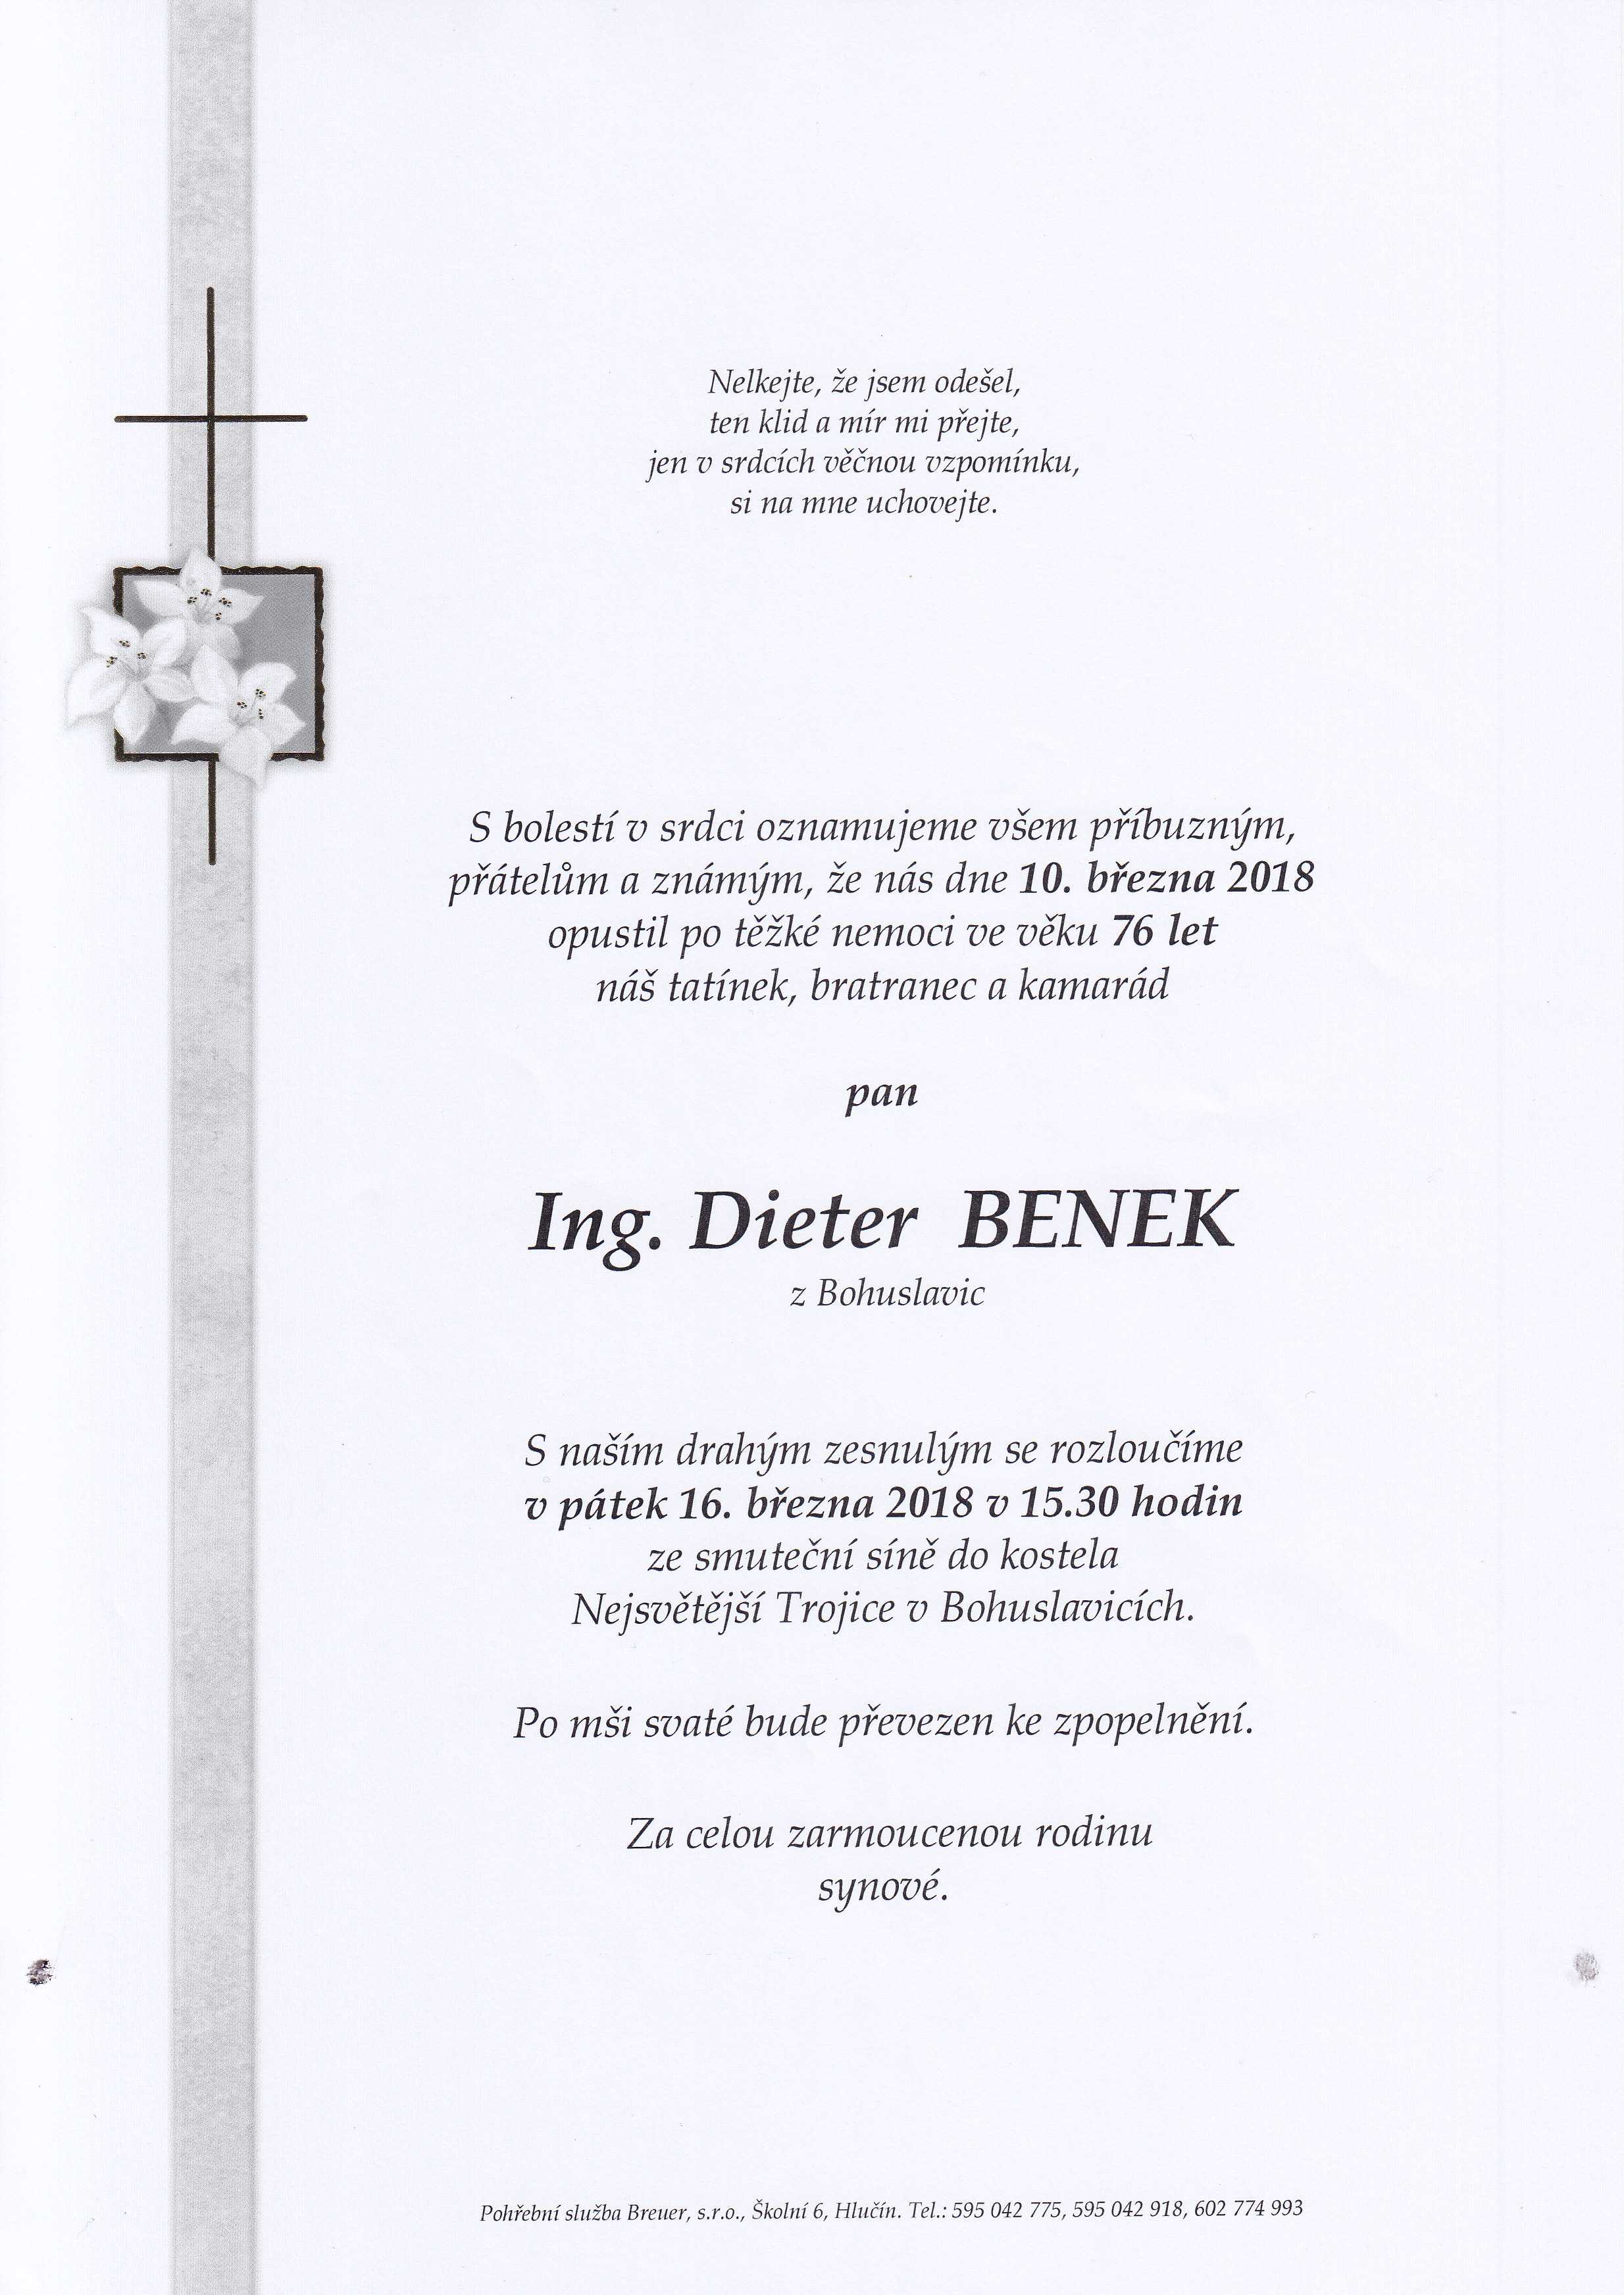 Benek Dieter